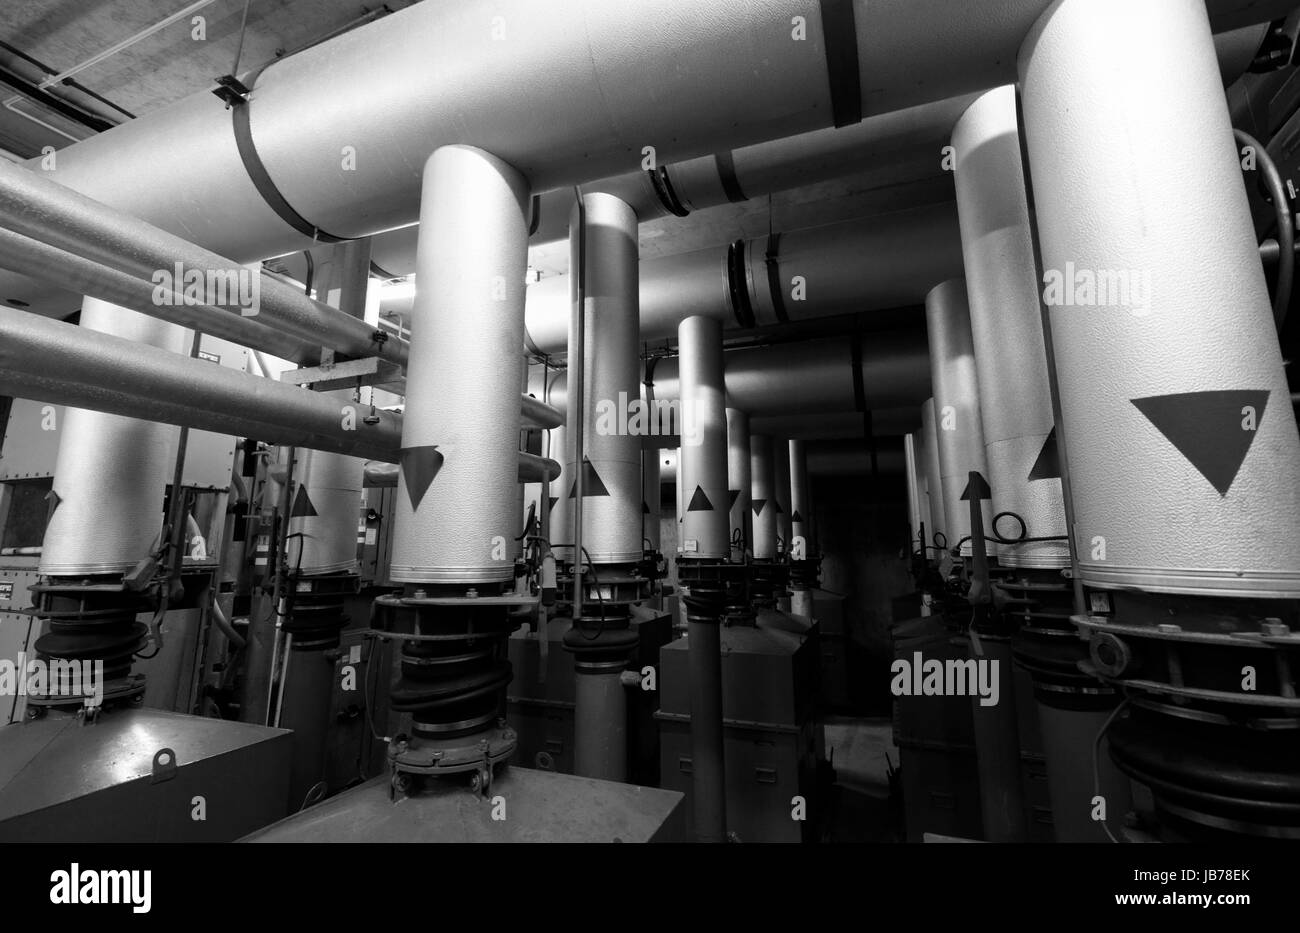 Metall-Rohrleitungen Teil Luft Pumpen und Filtration Systems in einem unterirdischen Bunker. Stockfoto